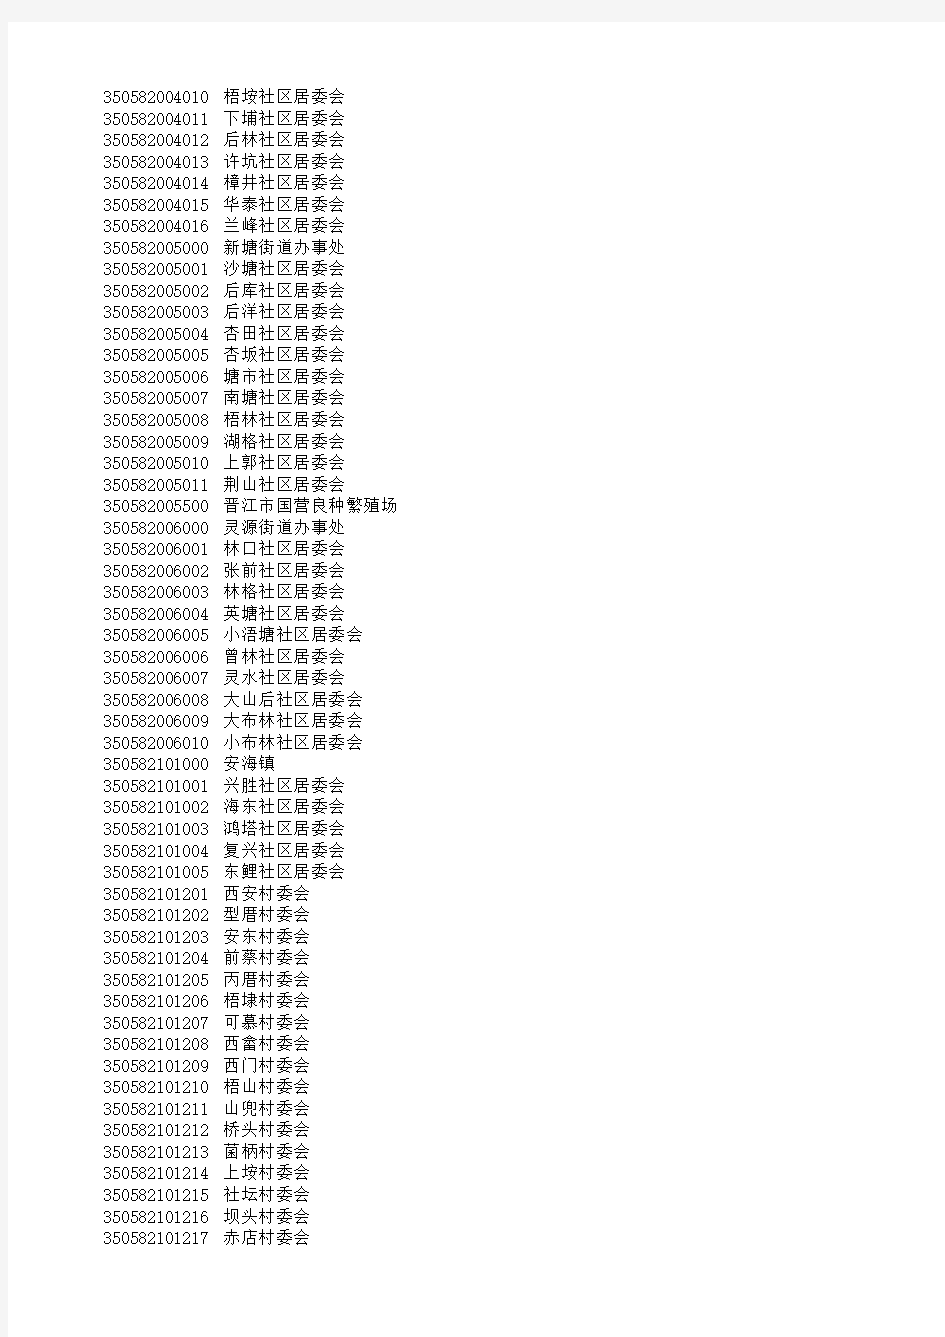 晋江市行政区划代码(2018.10)